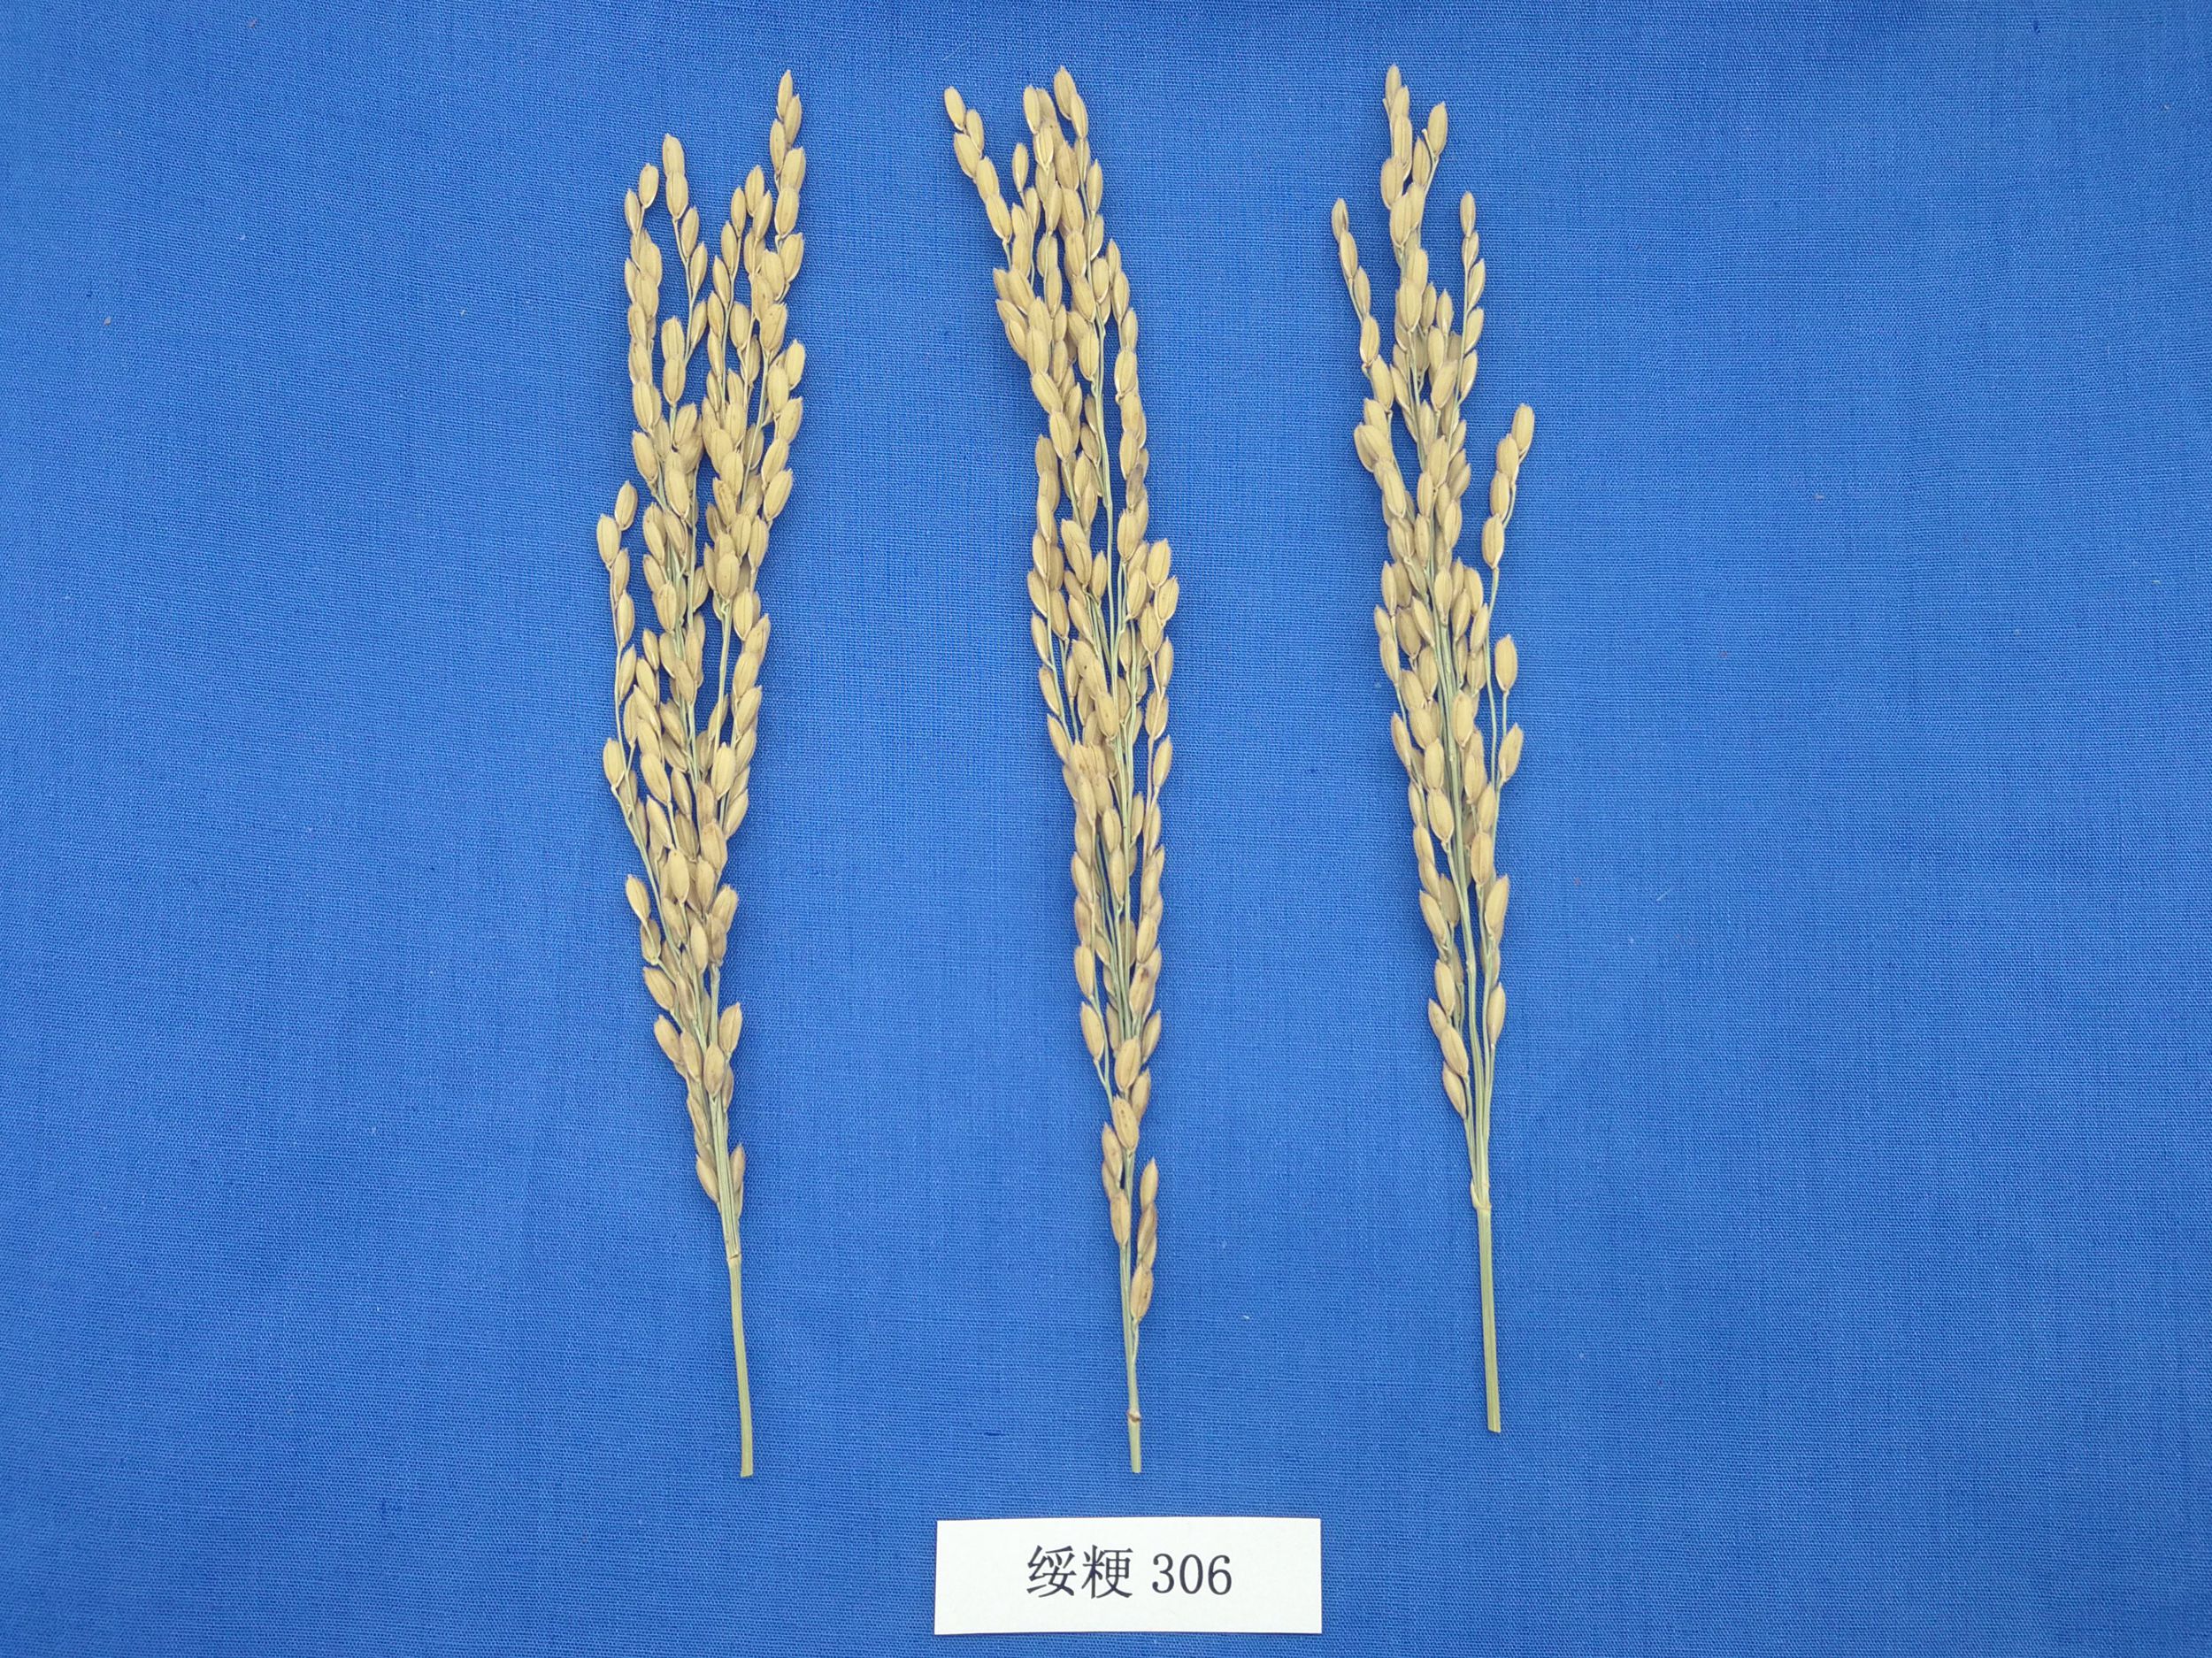 优质高产多抗水稻新品种绥粳306